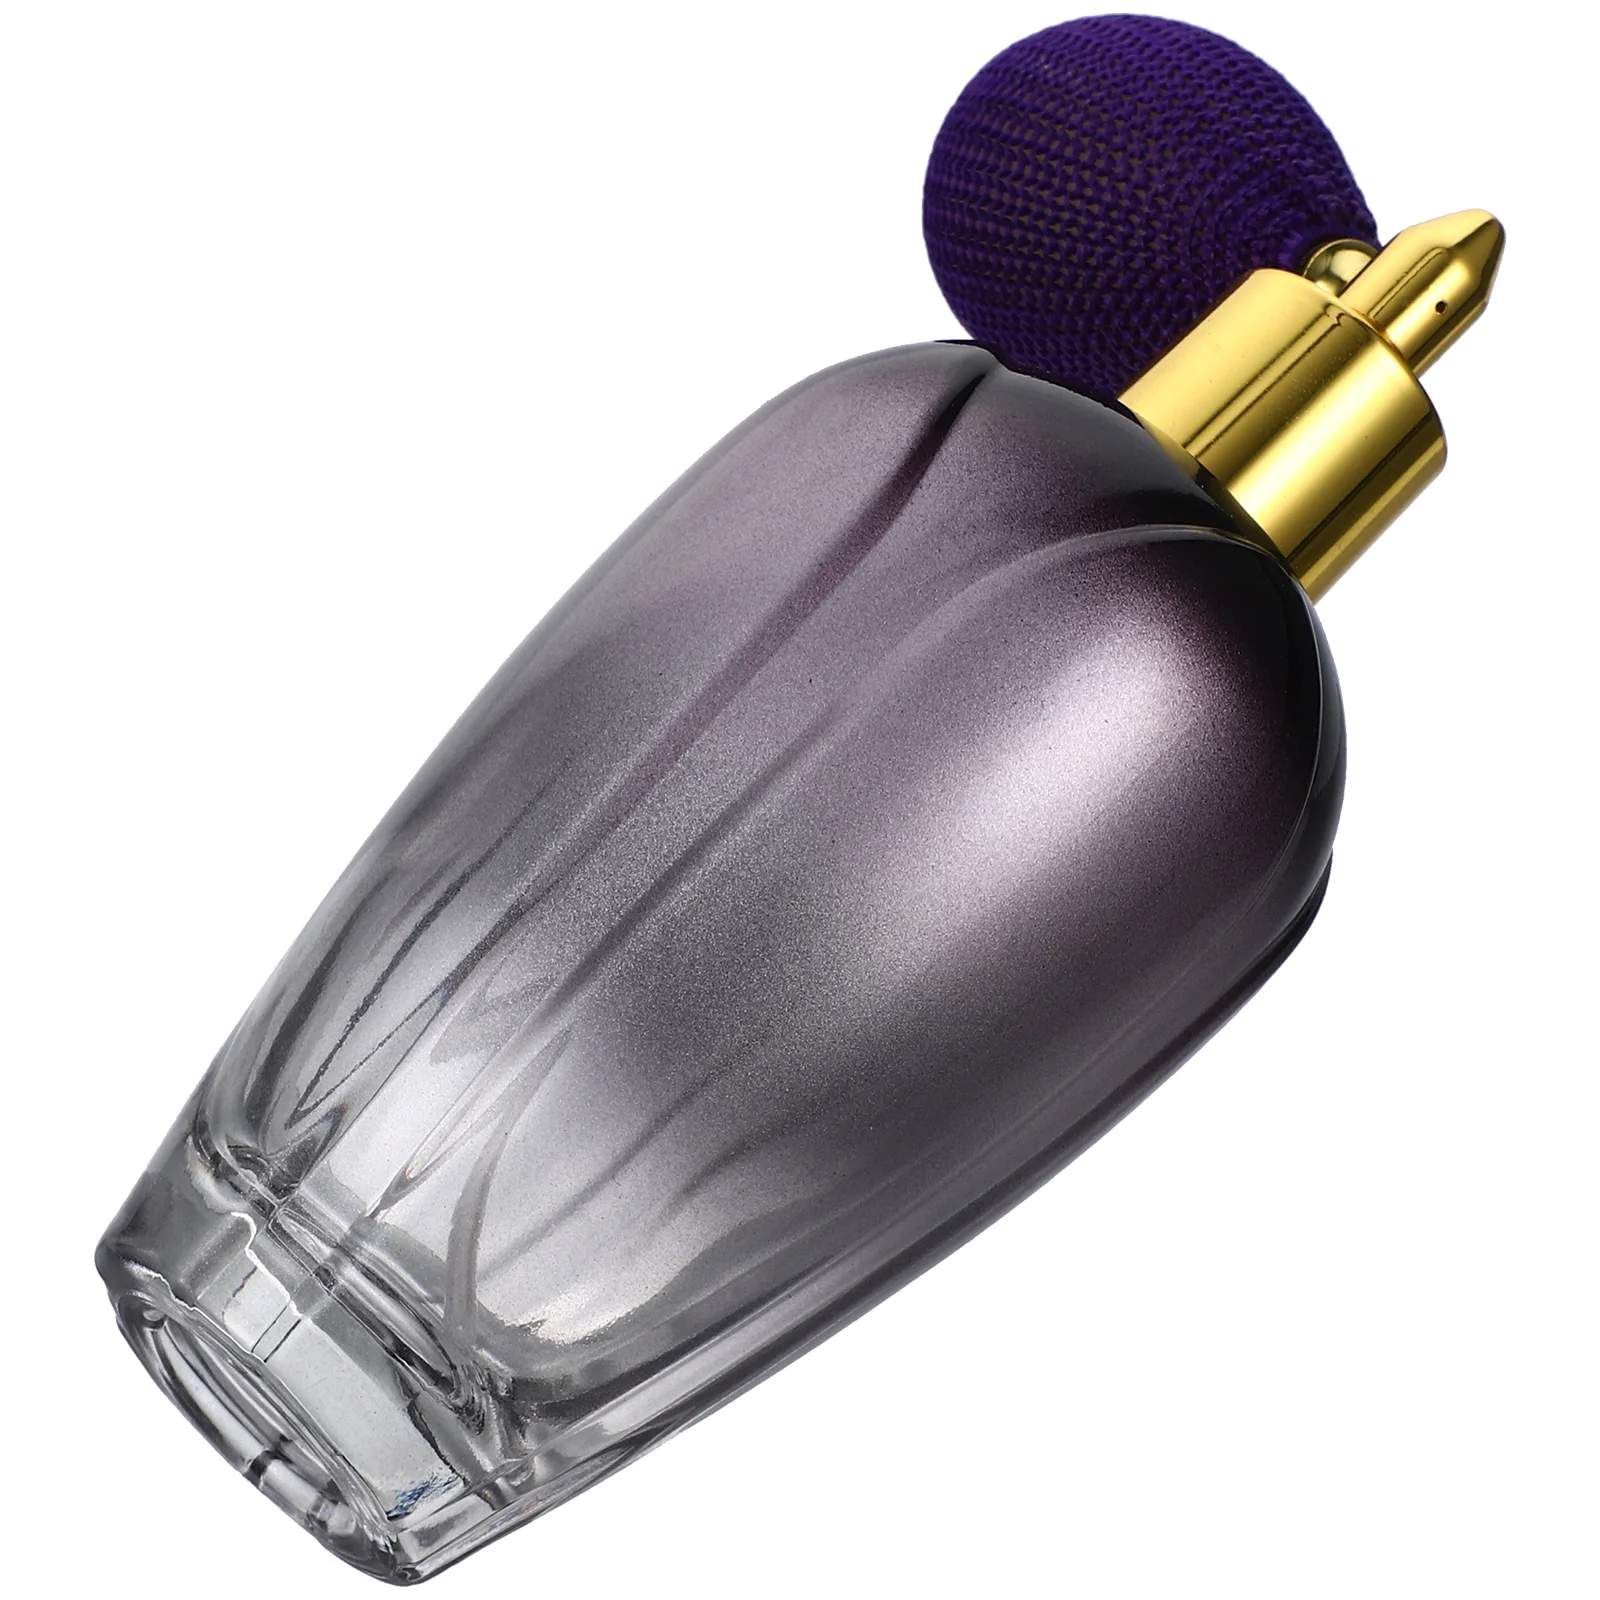 

Glass Perfume Bottle Mist Spray Bottle Travel Refillable Sprayer Airbag Perfume Sprayer Fragrance Perfume Dispenser